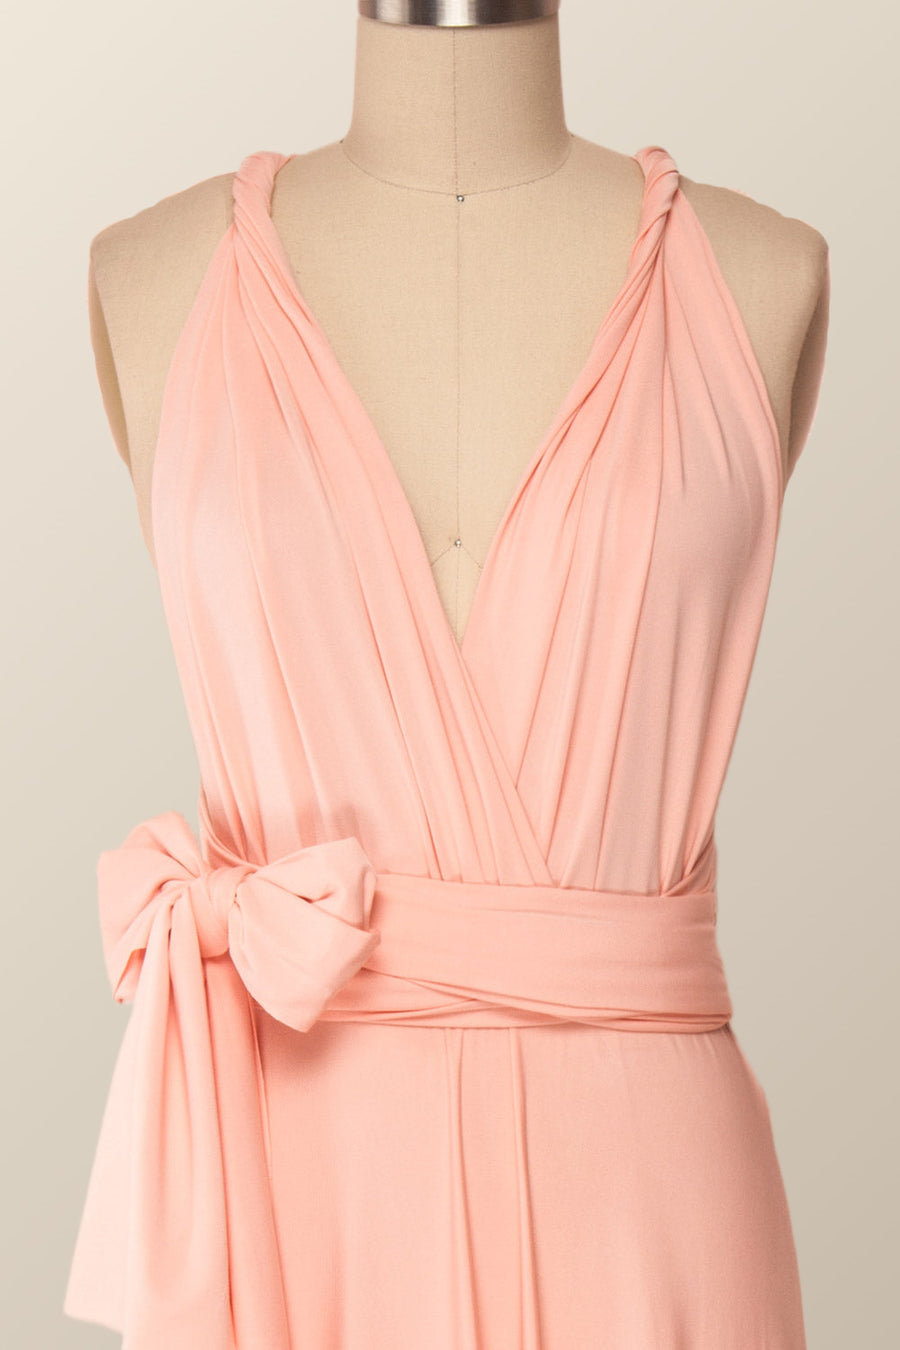 Pink Convertible Long Bridesmaid Dress